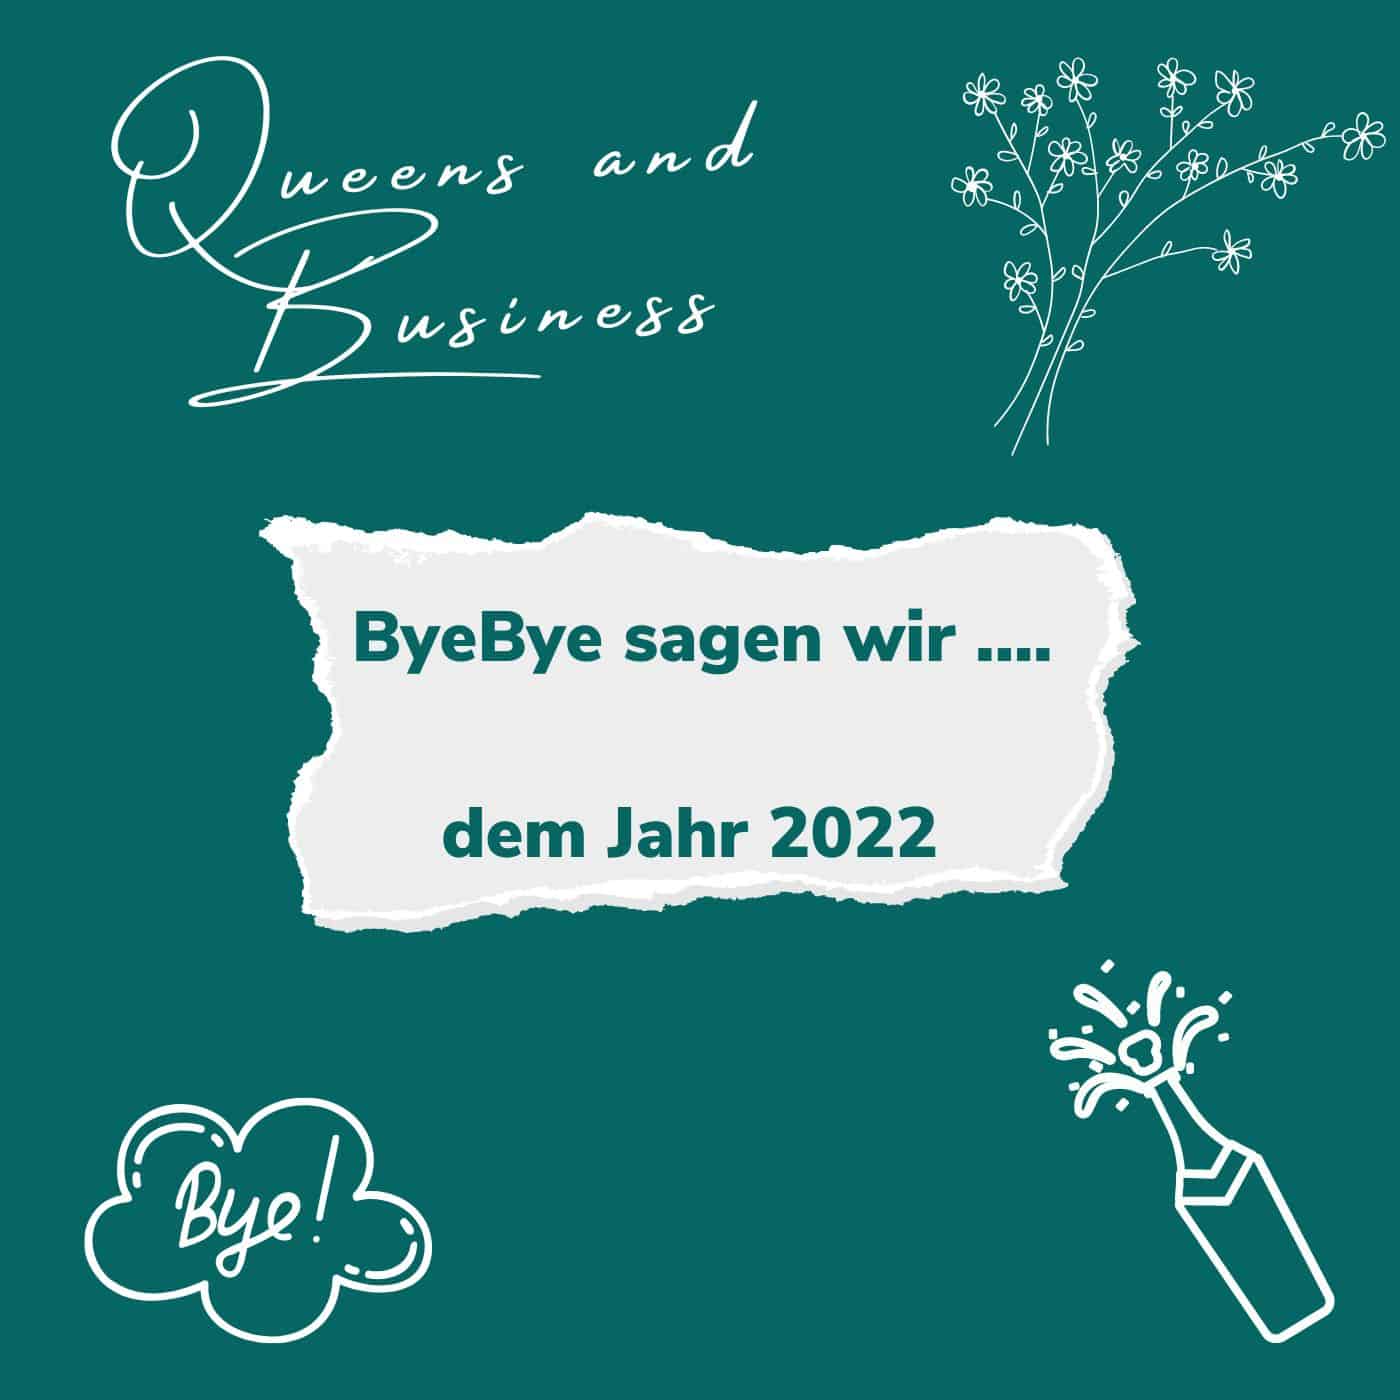 Bye Bye sagen wir ... dem Jahr 2022